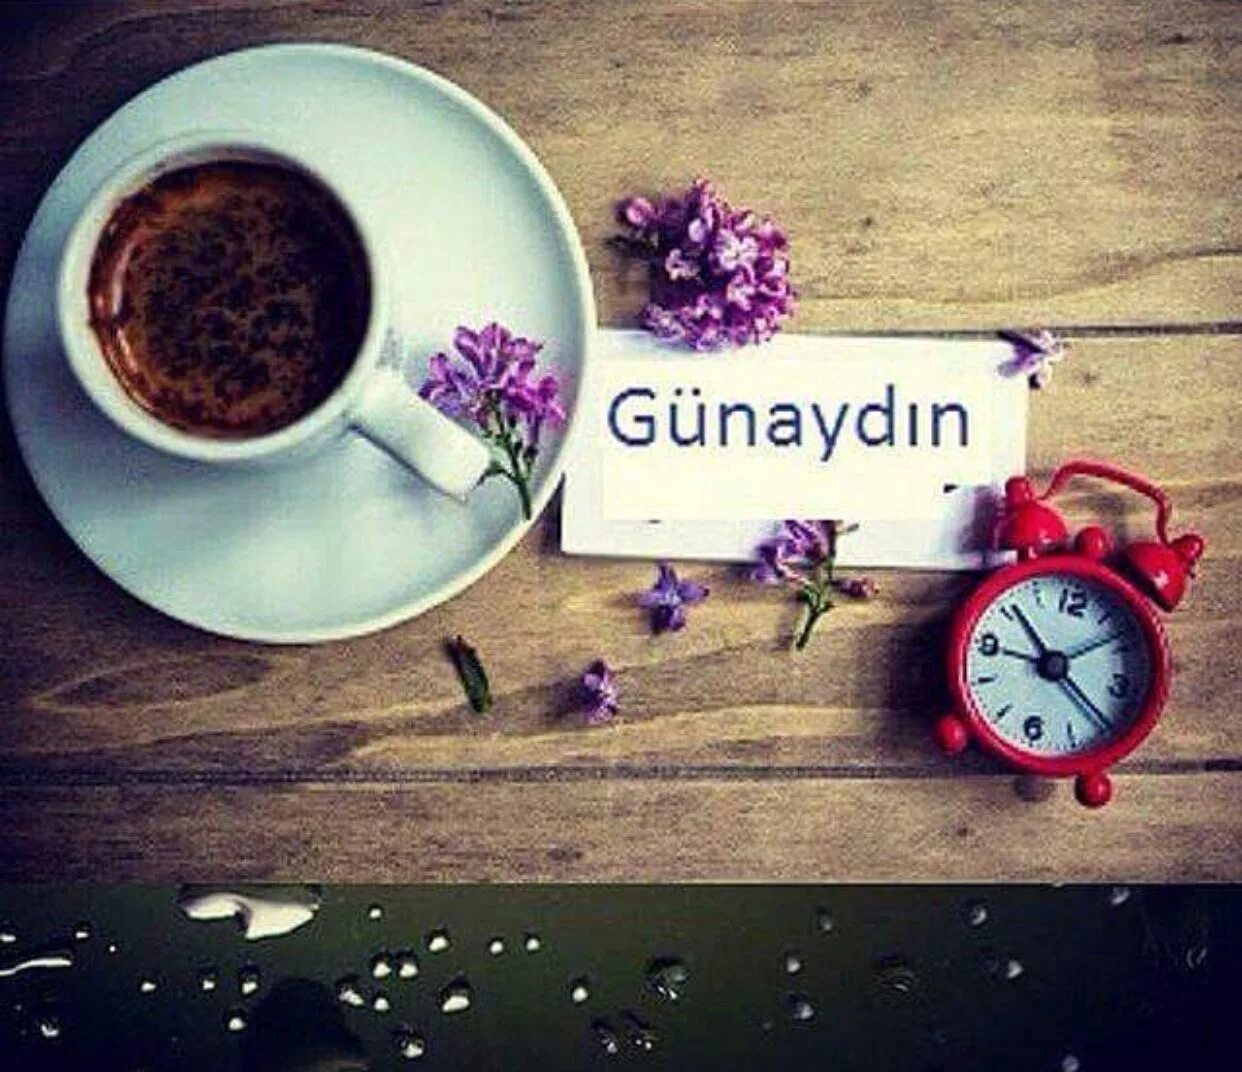 Доброе утро картинки на турецком языке мужчине. Доброе утро хорошего дня на турецком. Открытки с добрым утром на турецком. Открытки Günaydin. Доброе утро на турецком языке мужчине.